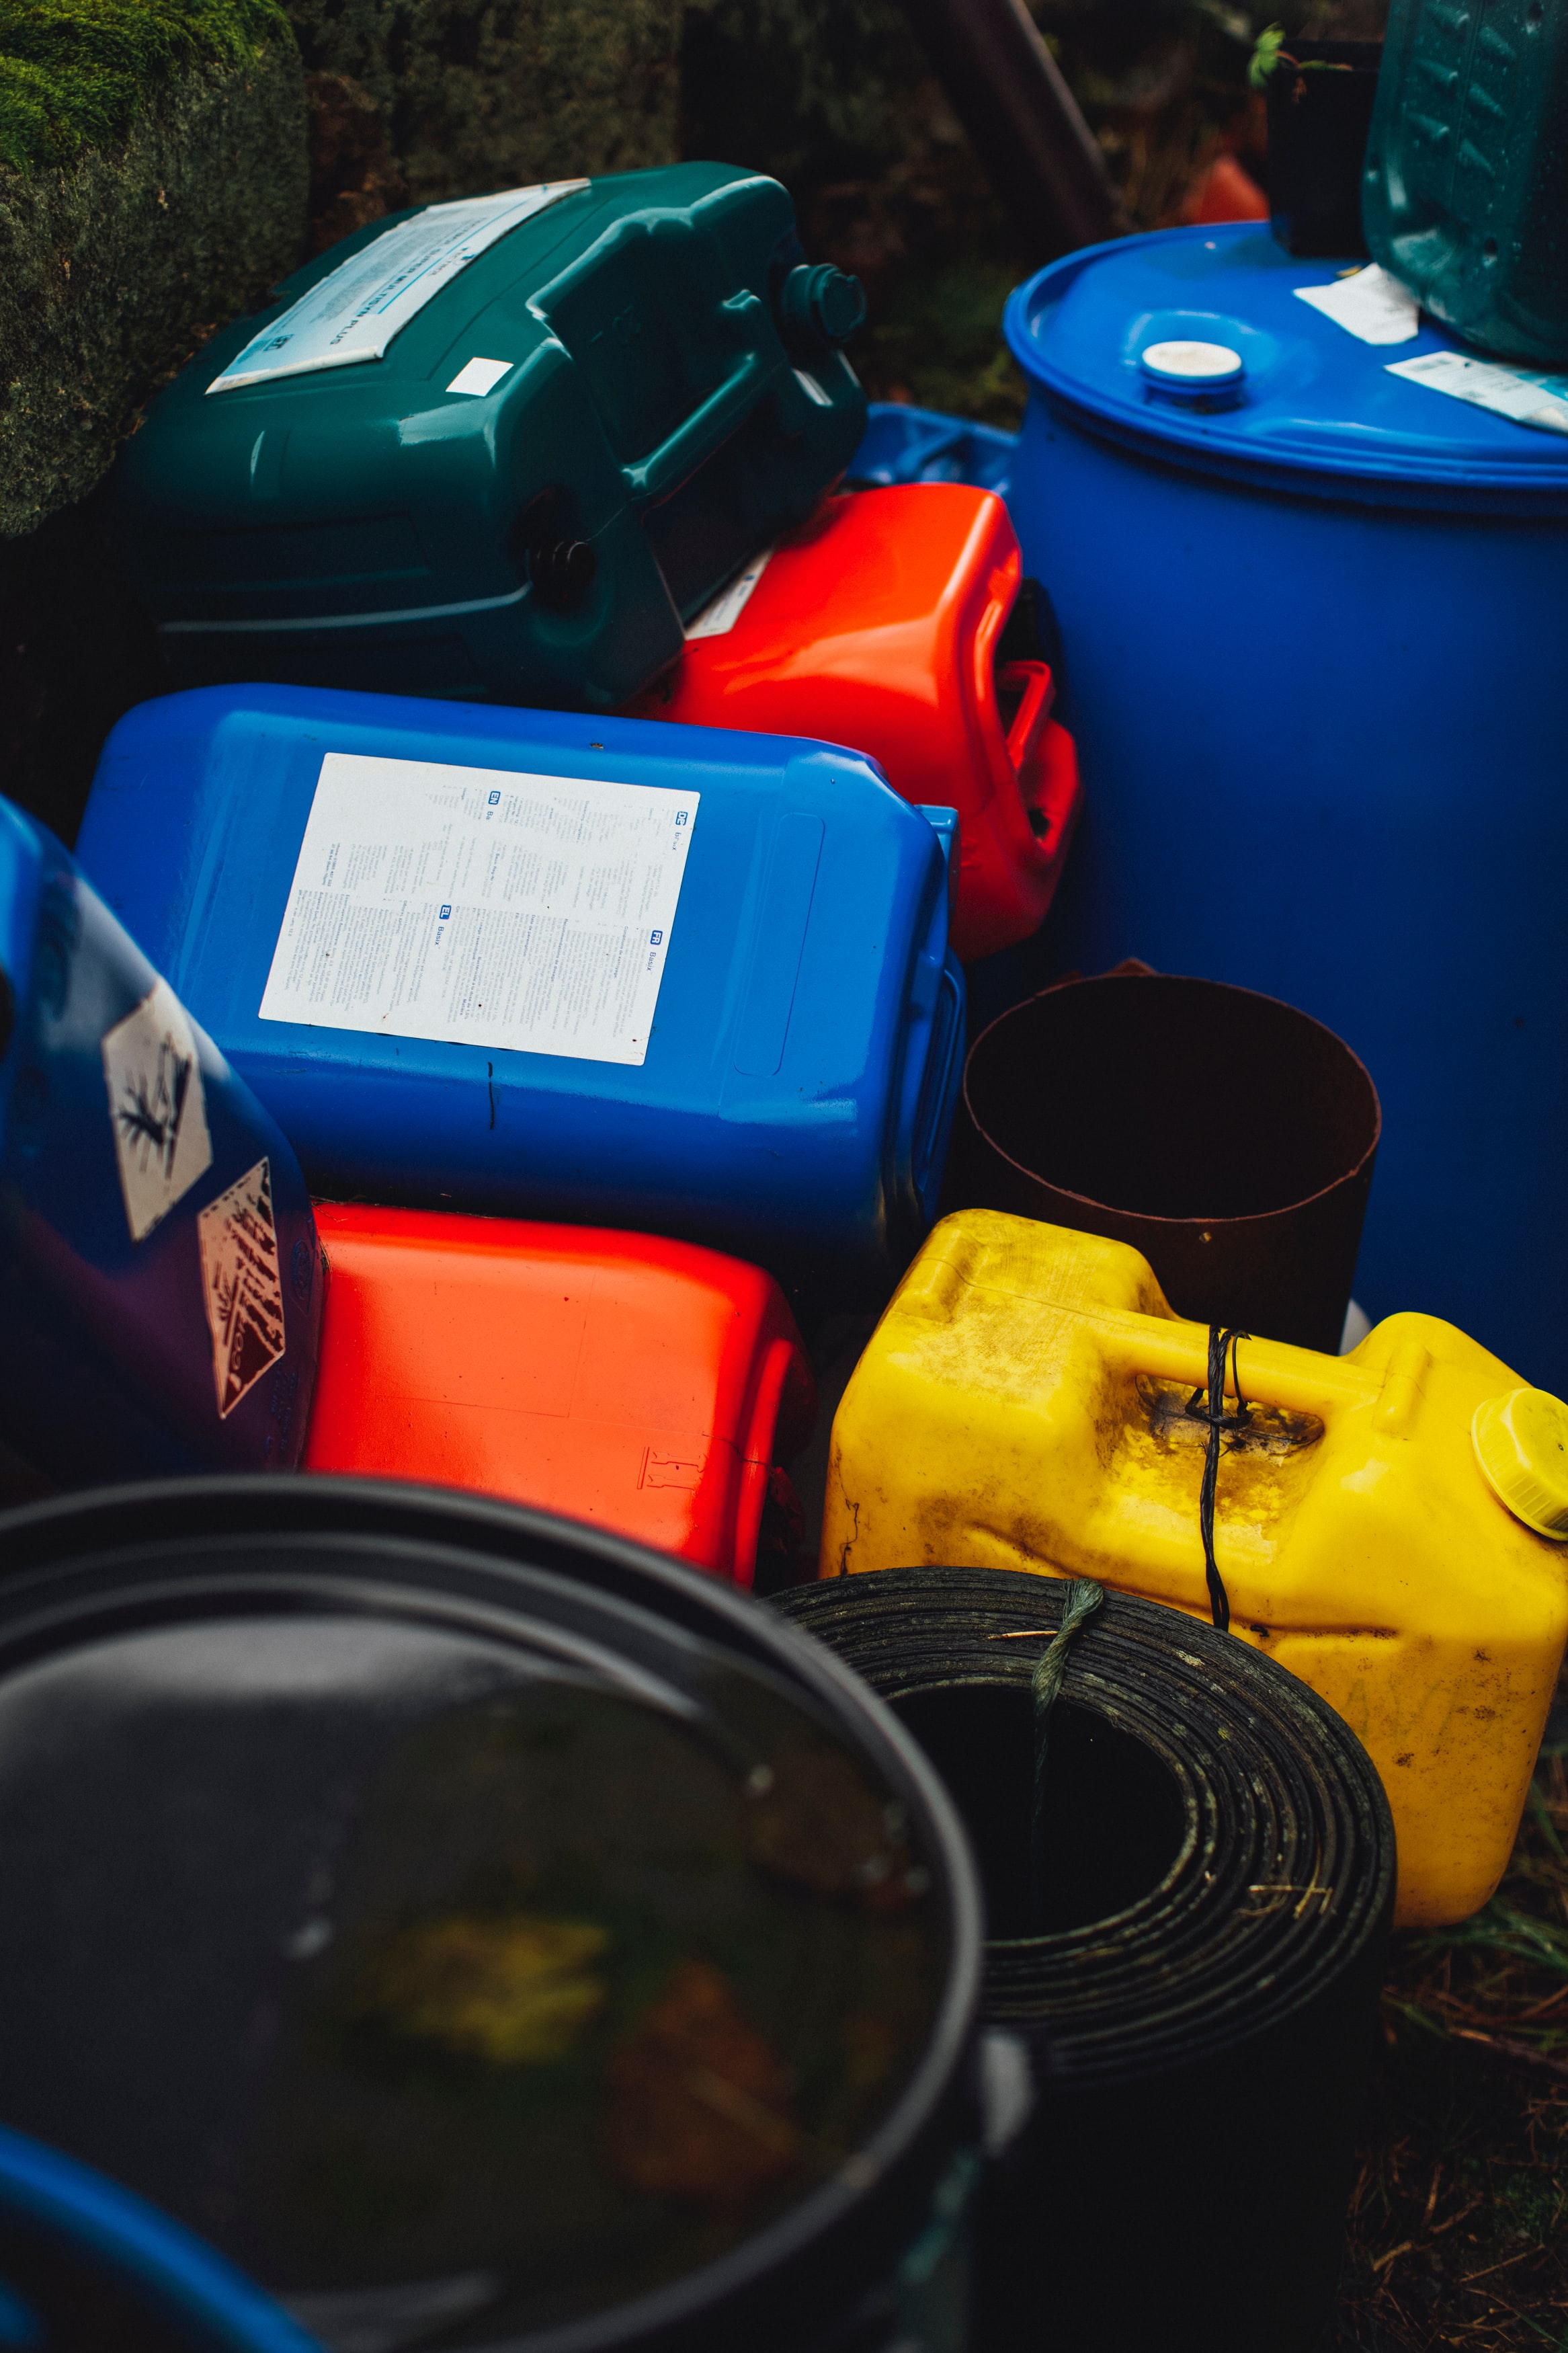 Treatment and disposal of hazardous waste in Estonia